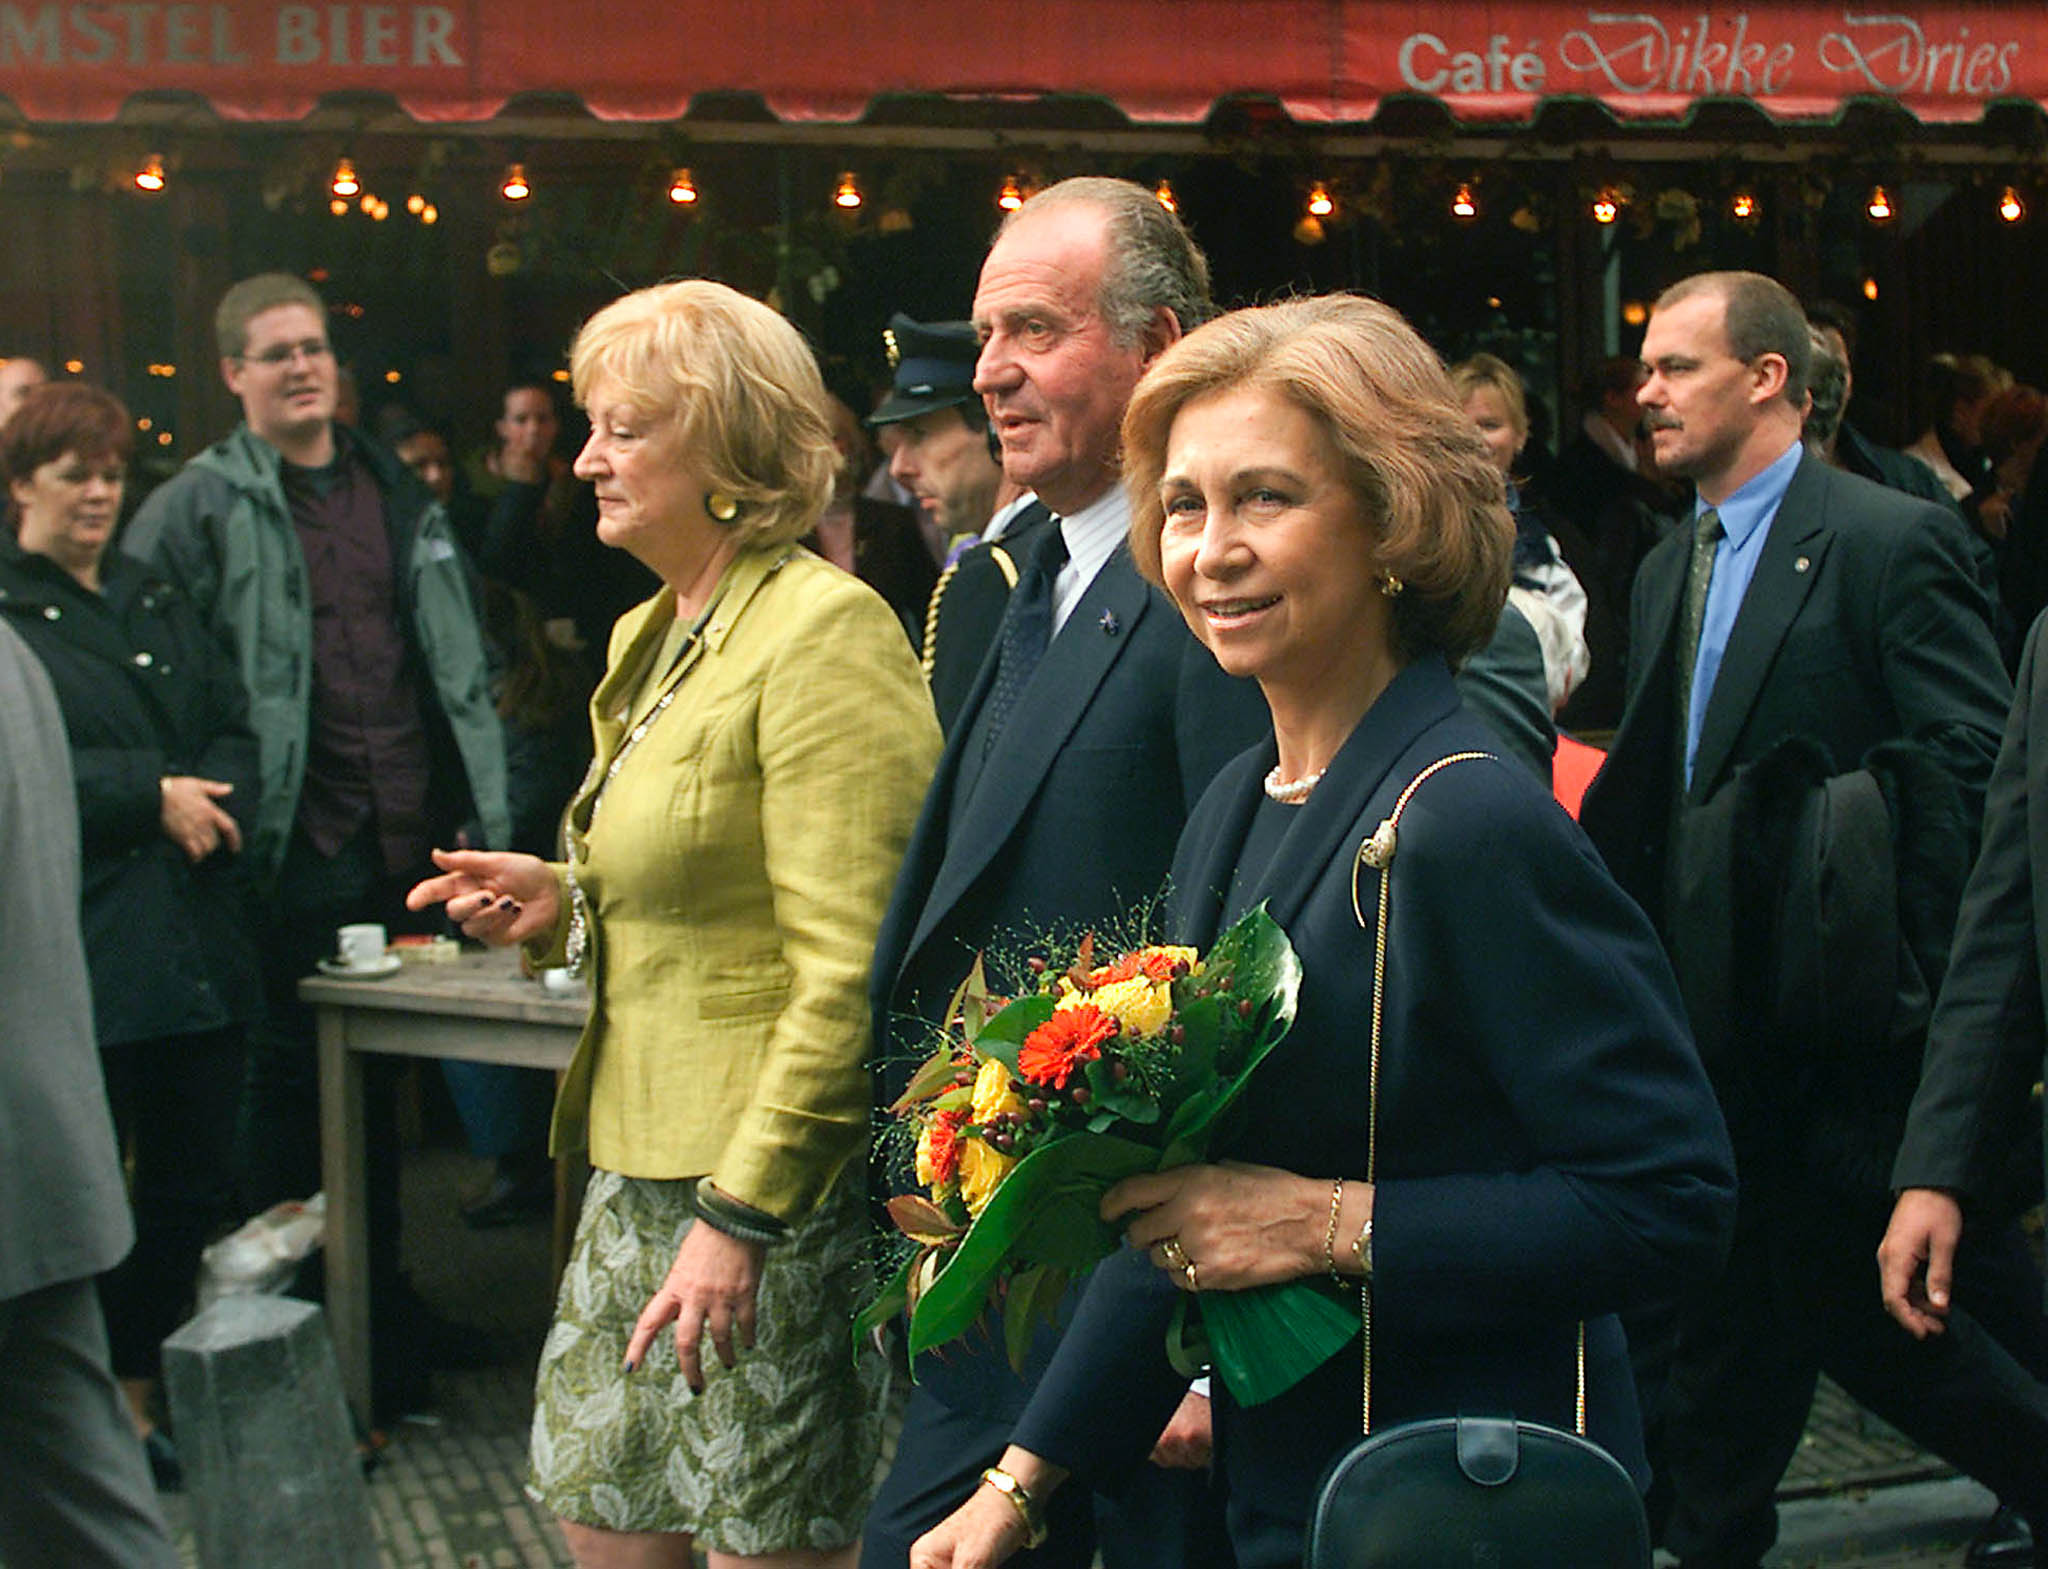 Juan Carlos en zijn vrouw maakten een wandeling door de Utrechtse binnenstad. De Spaanse koning ontving in 2001 een eredoctoraat. Ze werden begeleid door de toenmalige burgemeester Annie Brouwer.